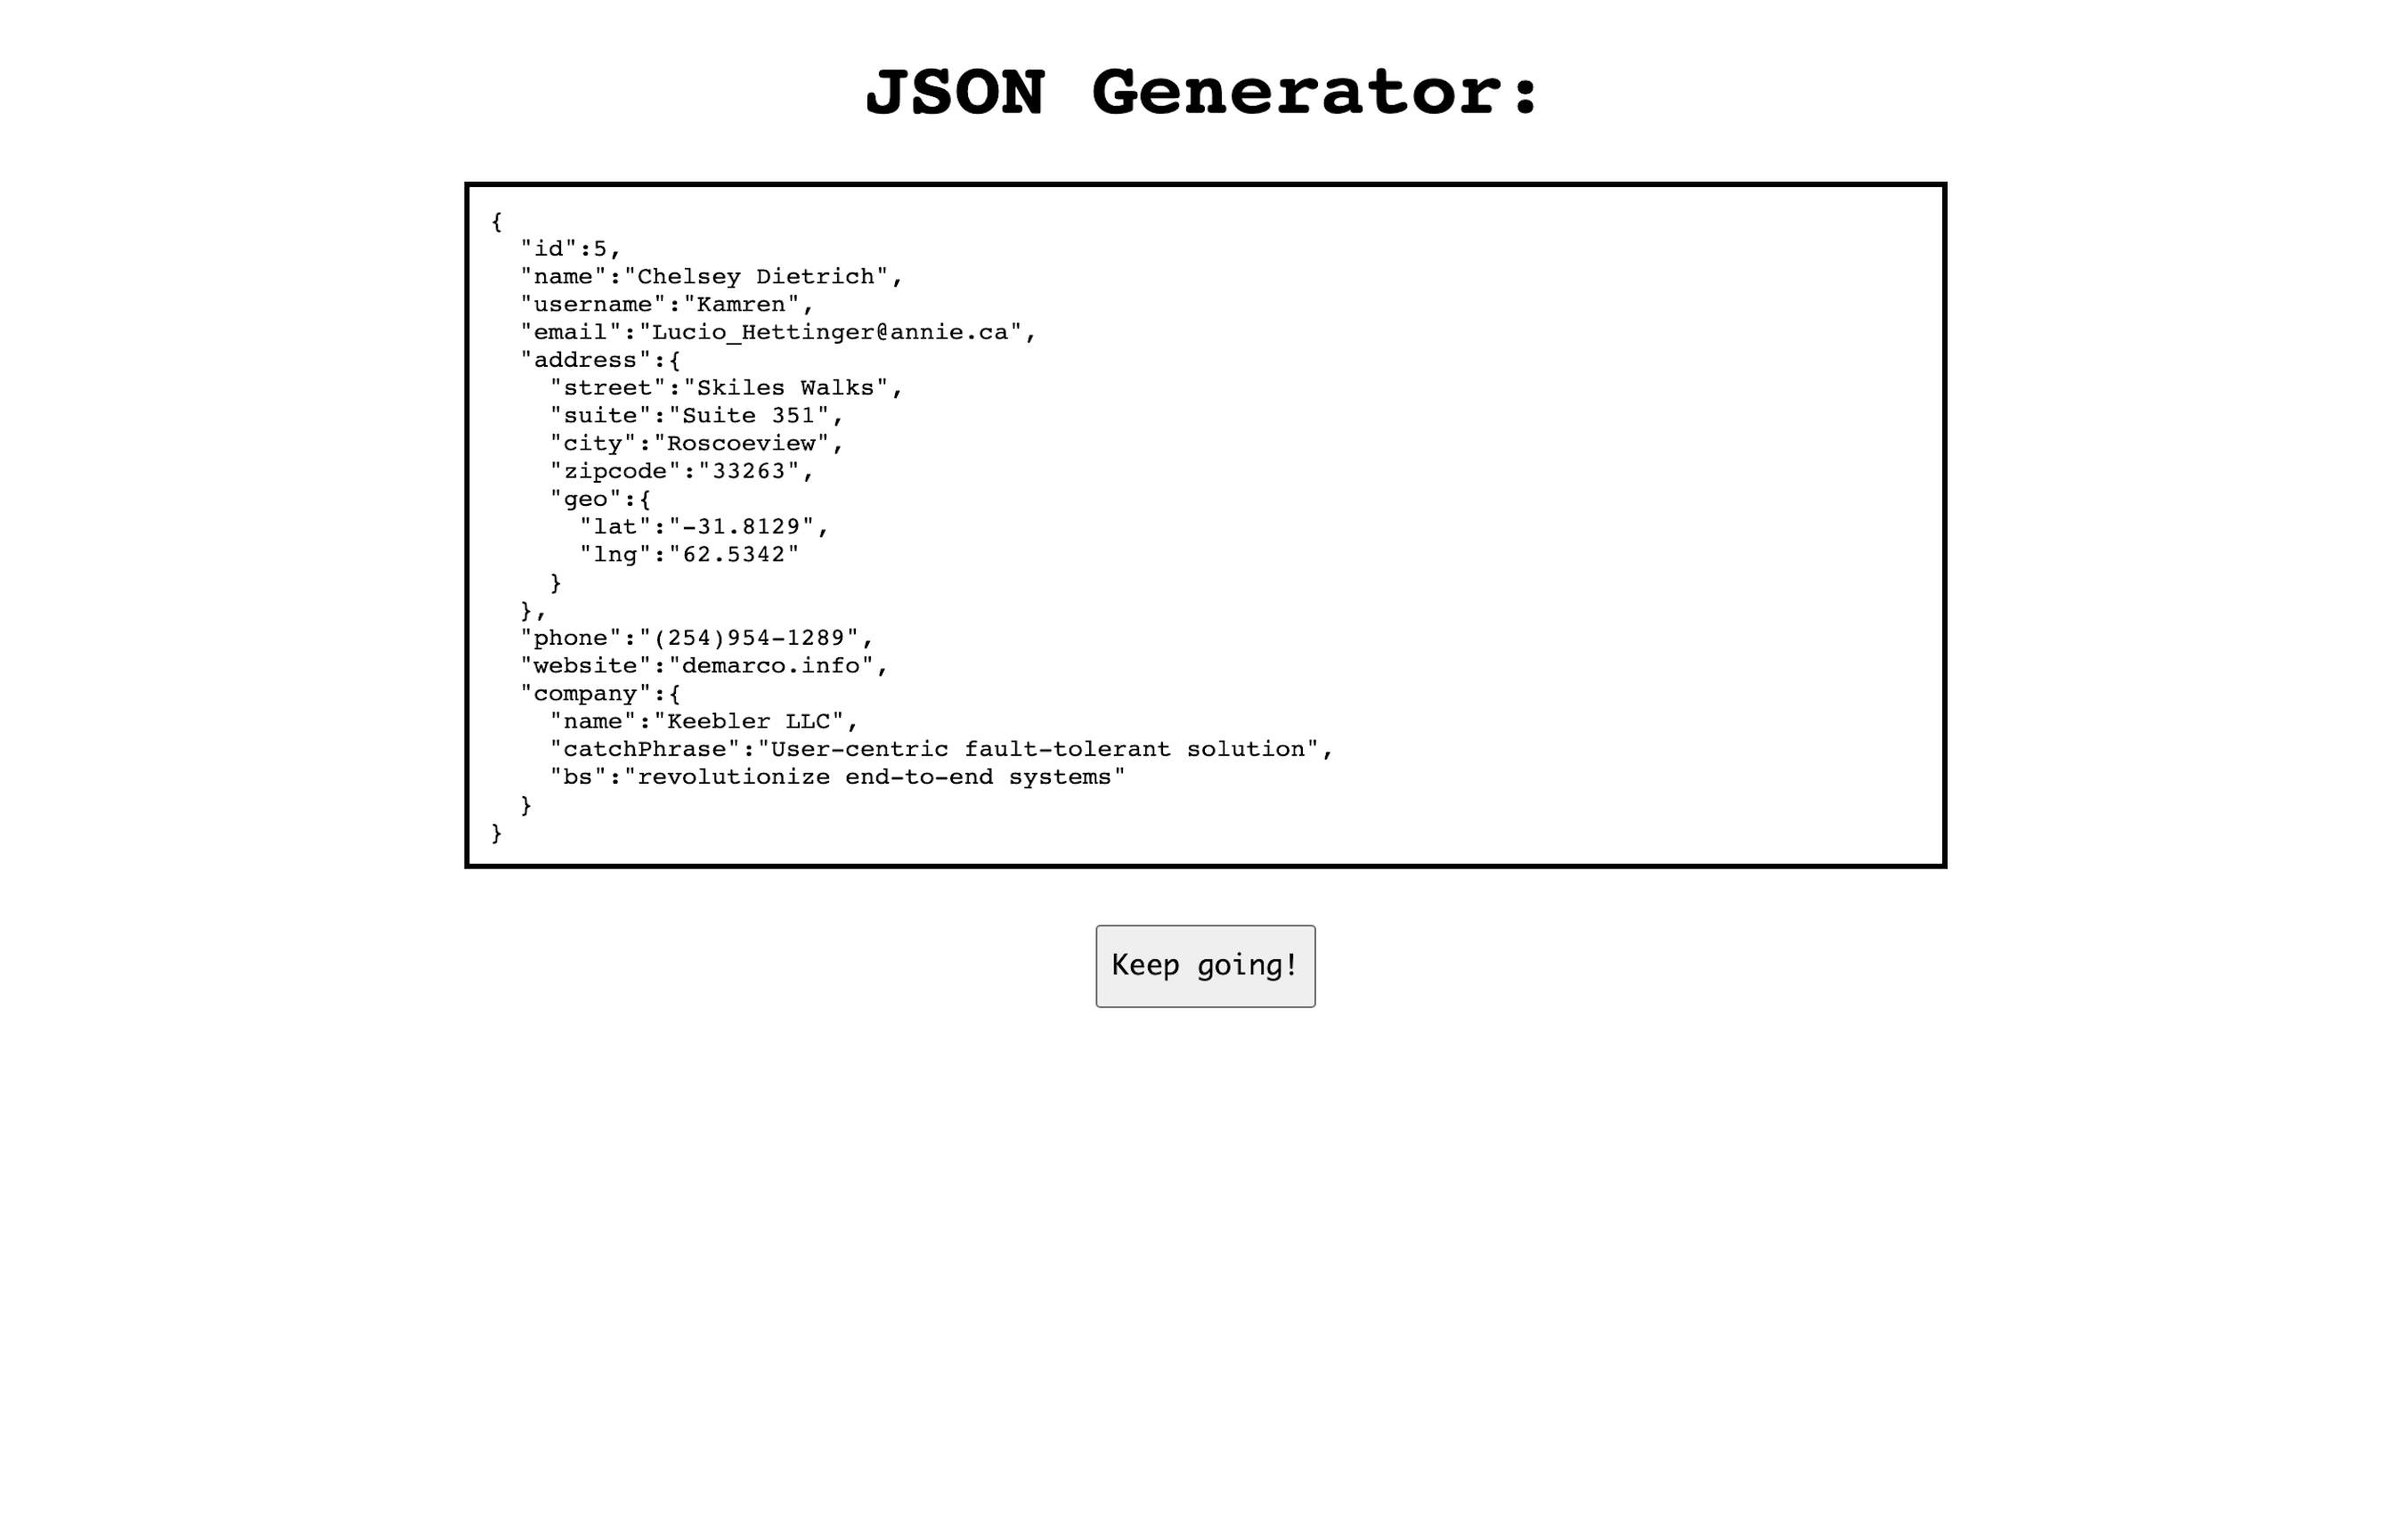 https://jboyle1.github.io/json-Generator/